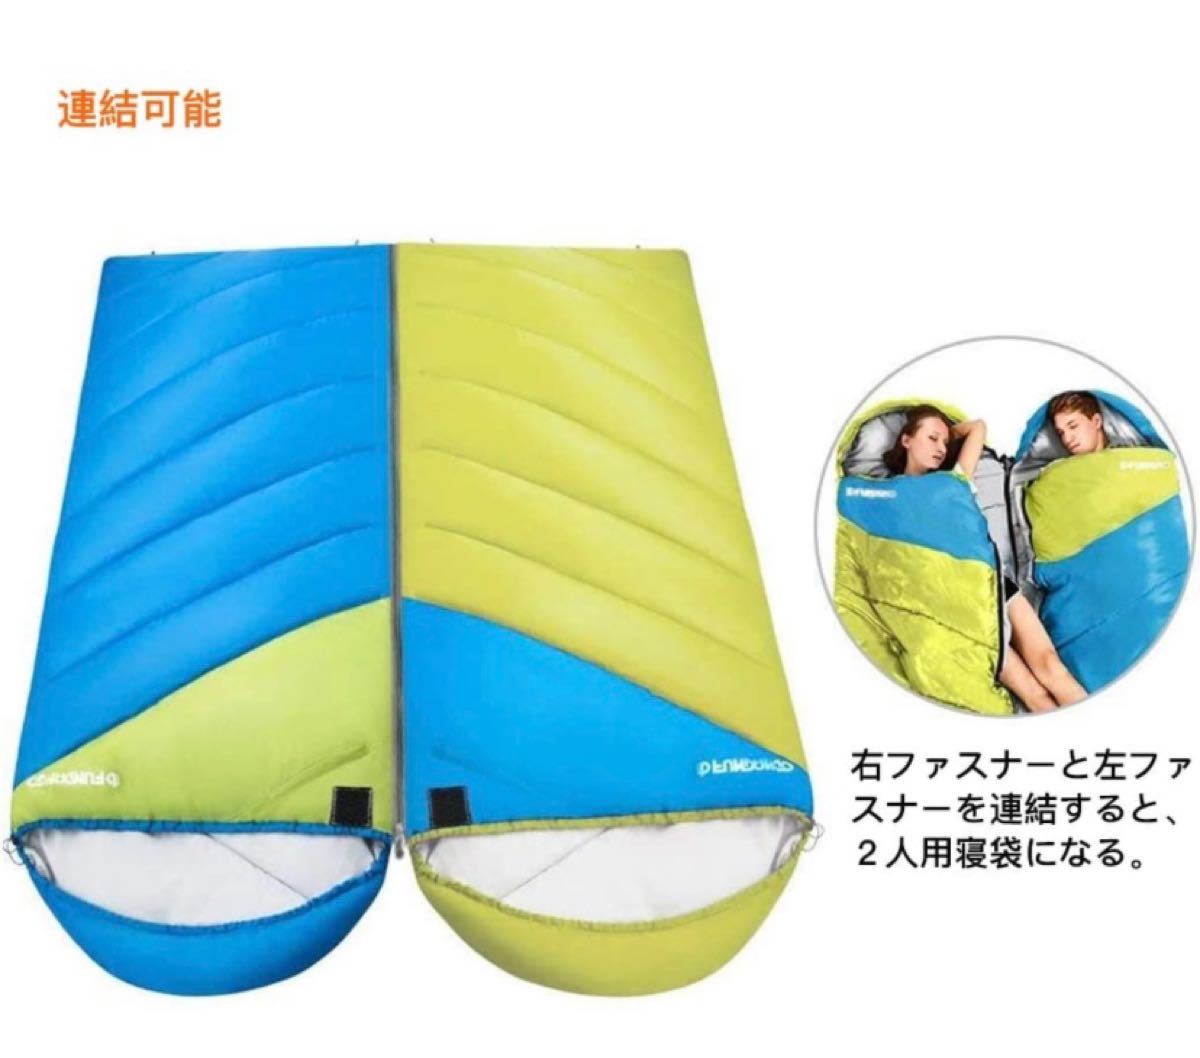 寝袋 シュラフ 封筒型 四季適応 コンパクト ゆったりのサイズ 丸洗い 防水 軽量 シングル ダブル アウトドア キャンプ 防災 